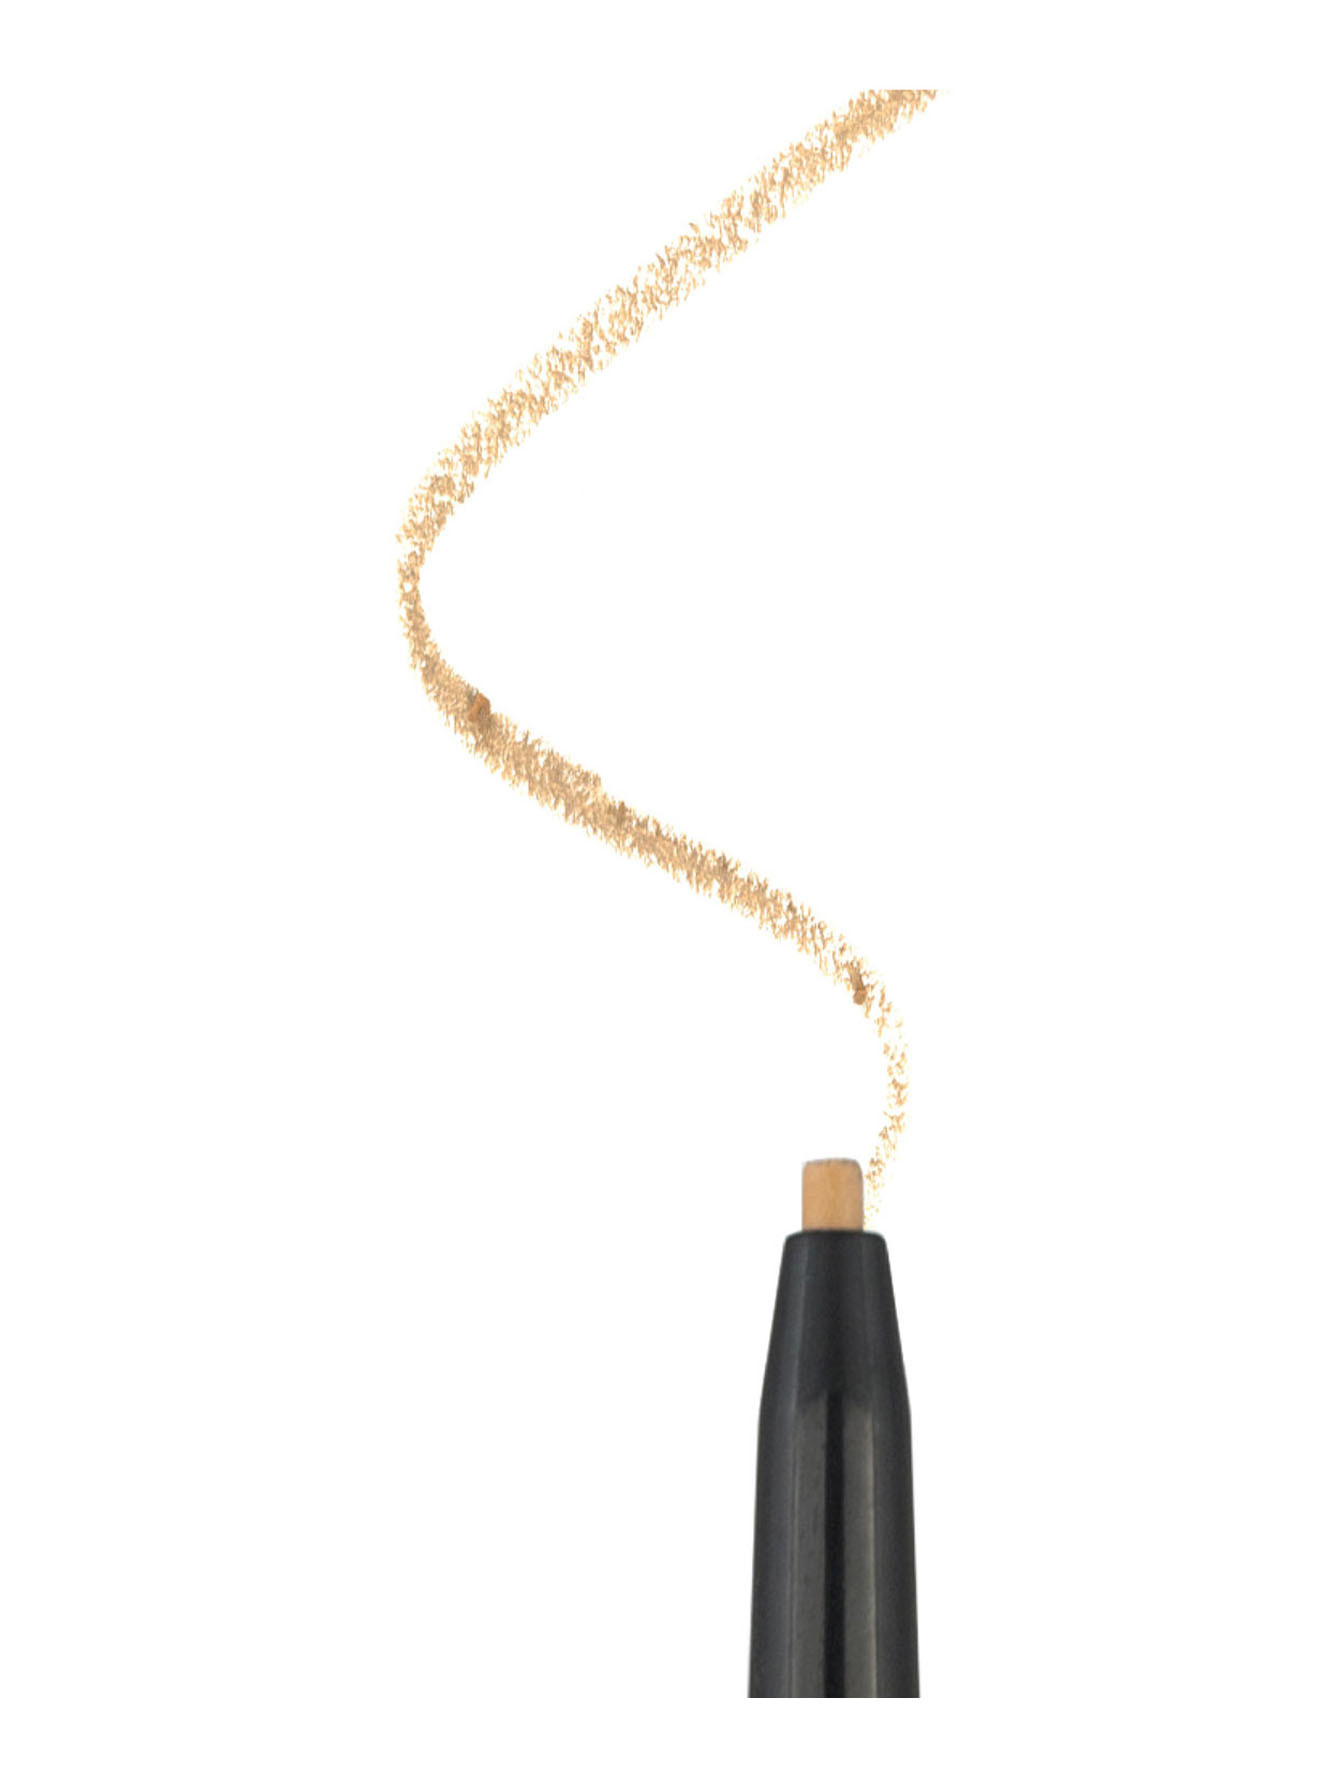 Ультратонкий водостойкий карандаш для бровей Brows on Point, светлый - Обтравка1